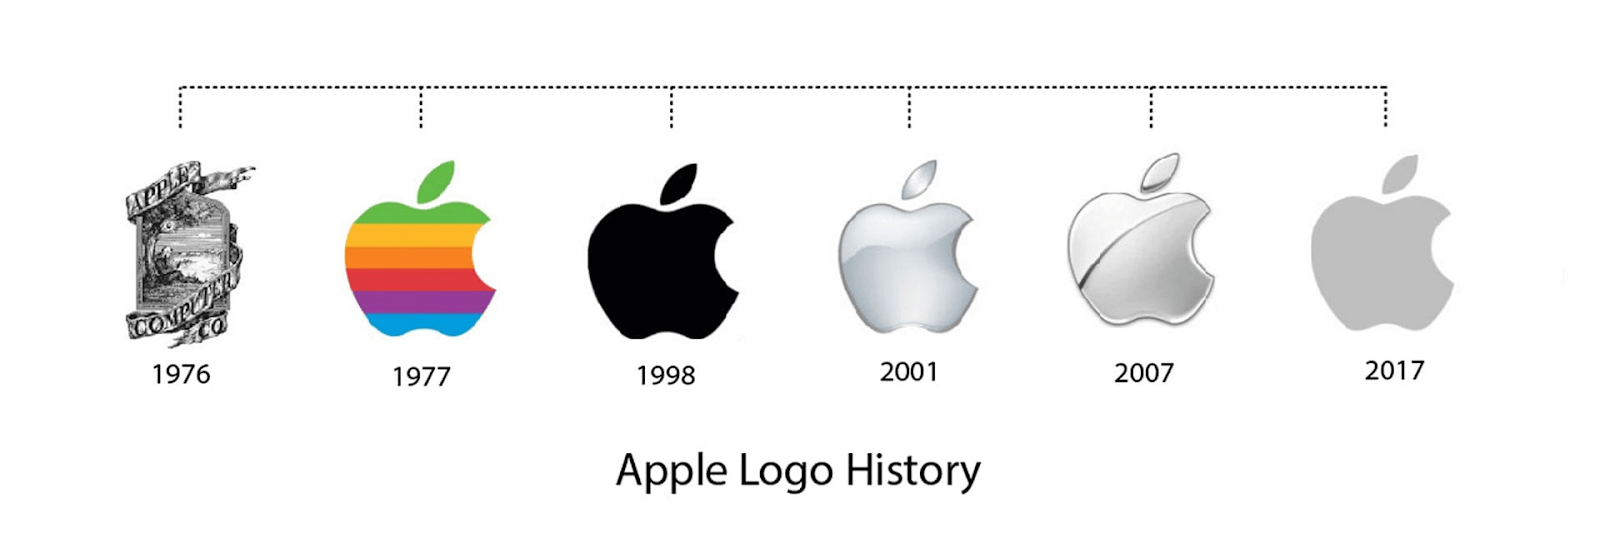 logotipo de apple al largo de los años